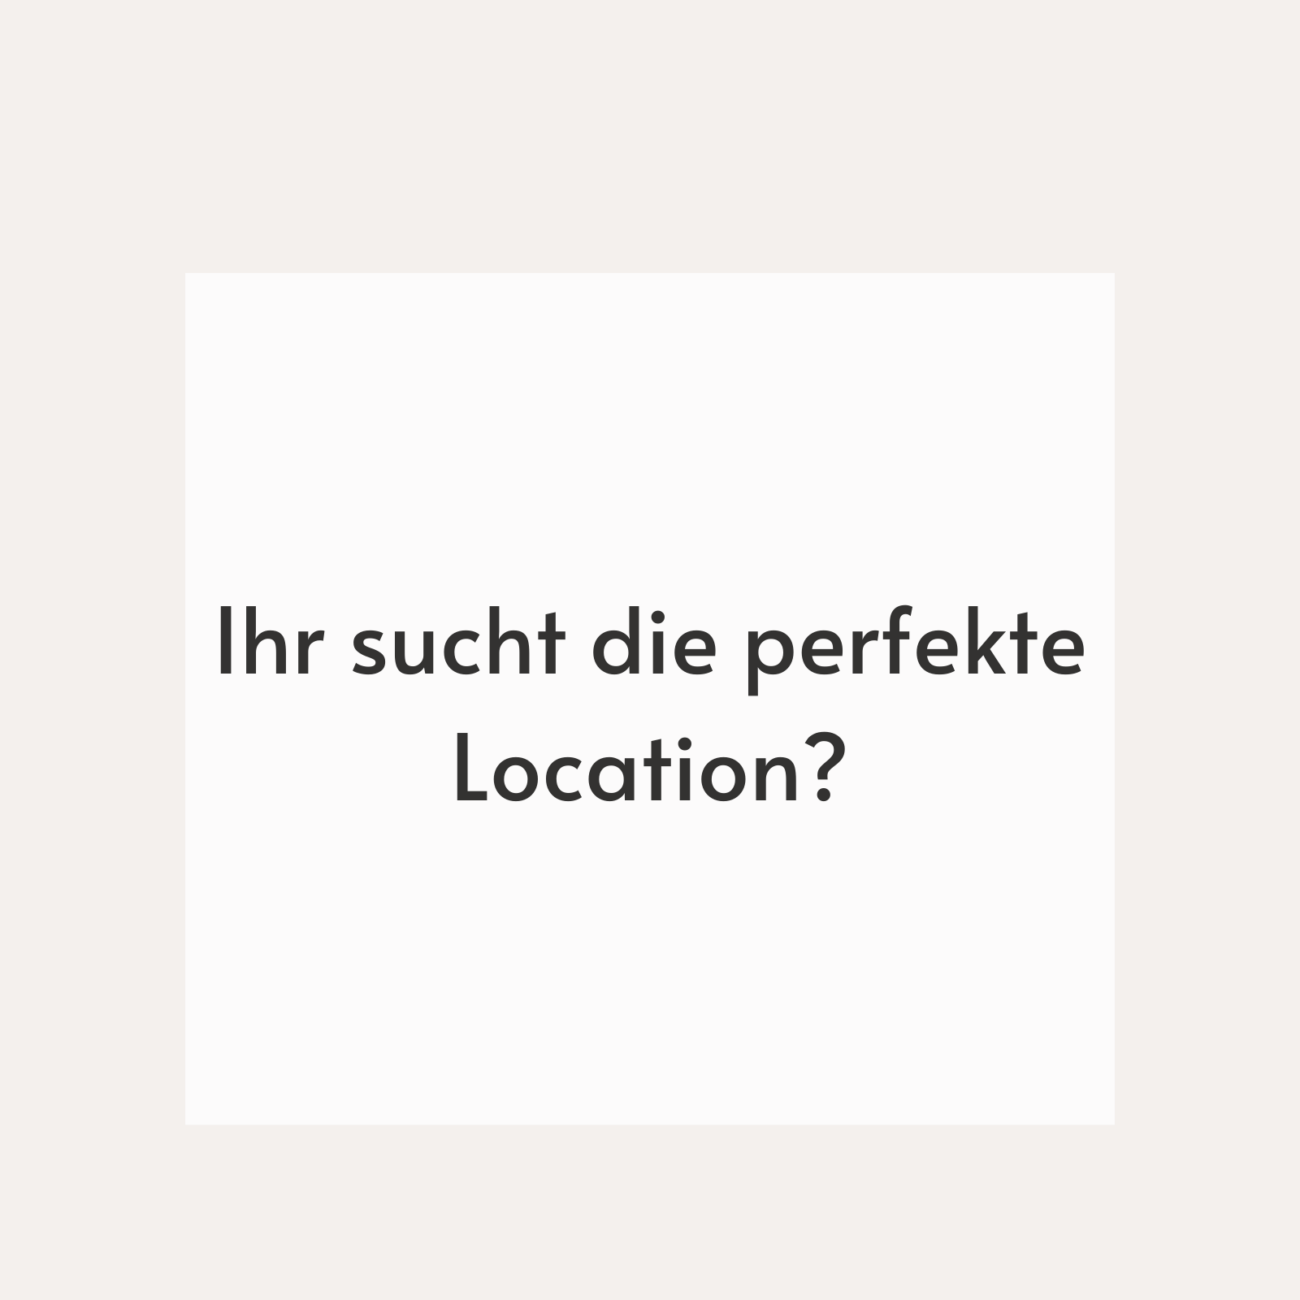 Weißes Quadrat mit Text "IIhr sucht die perfekte Location?"